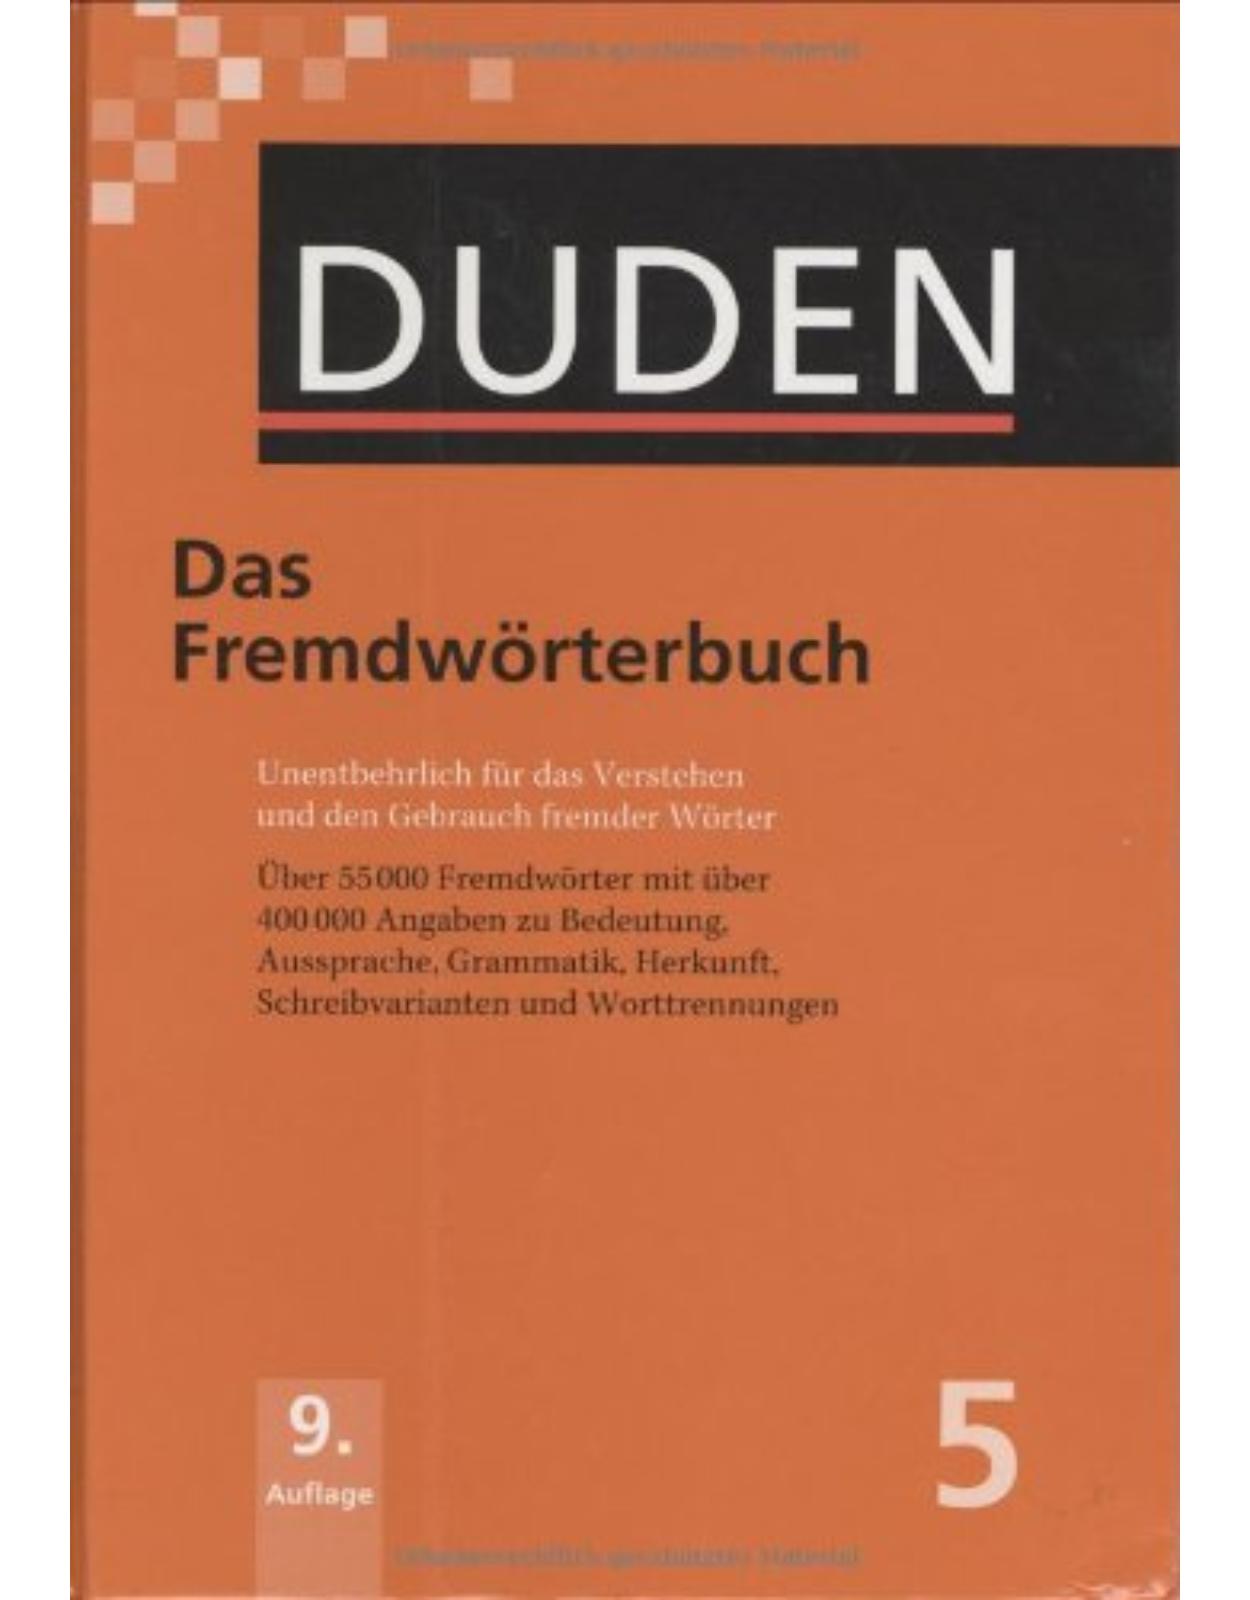 Der Duden in 12 Bänden - Band 5 : Das Fremdwörterbuch